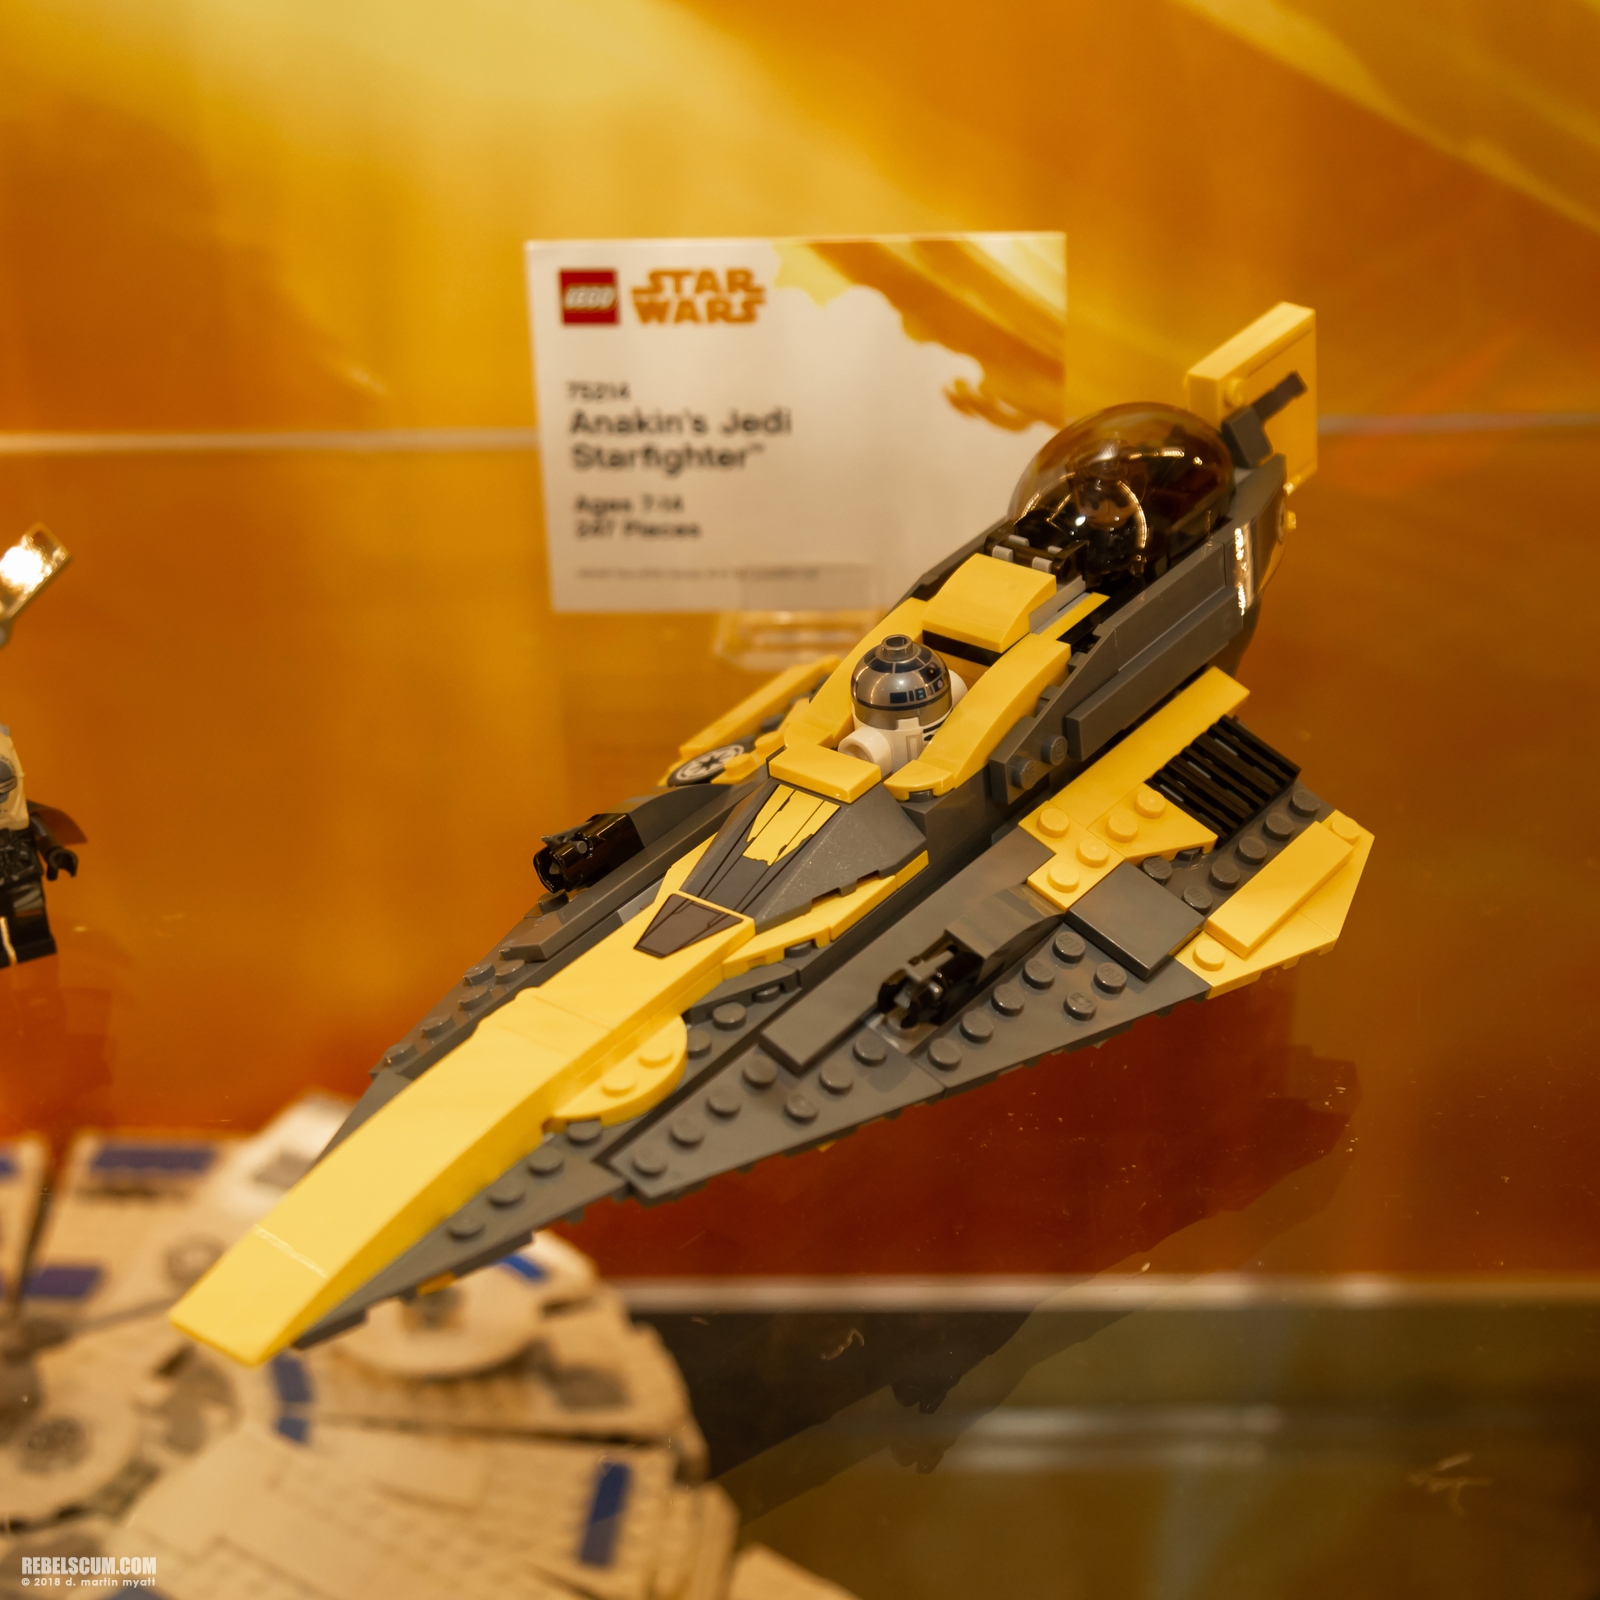 2018-San-Diego-Comic-Con-SDCC-Star-Wars-LEGO-016.jpg